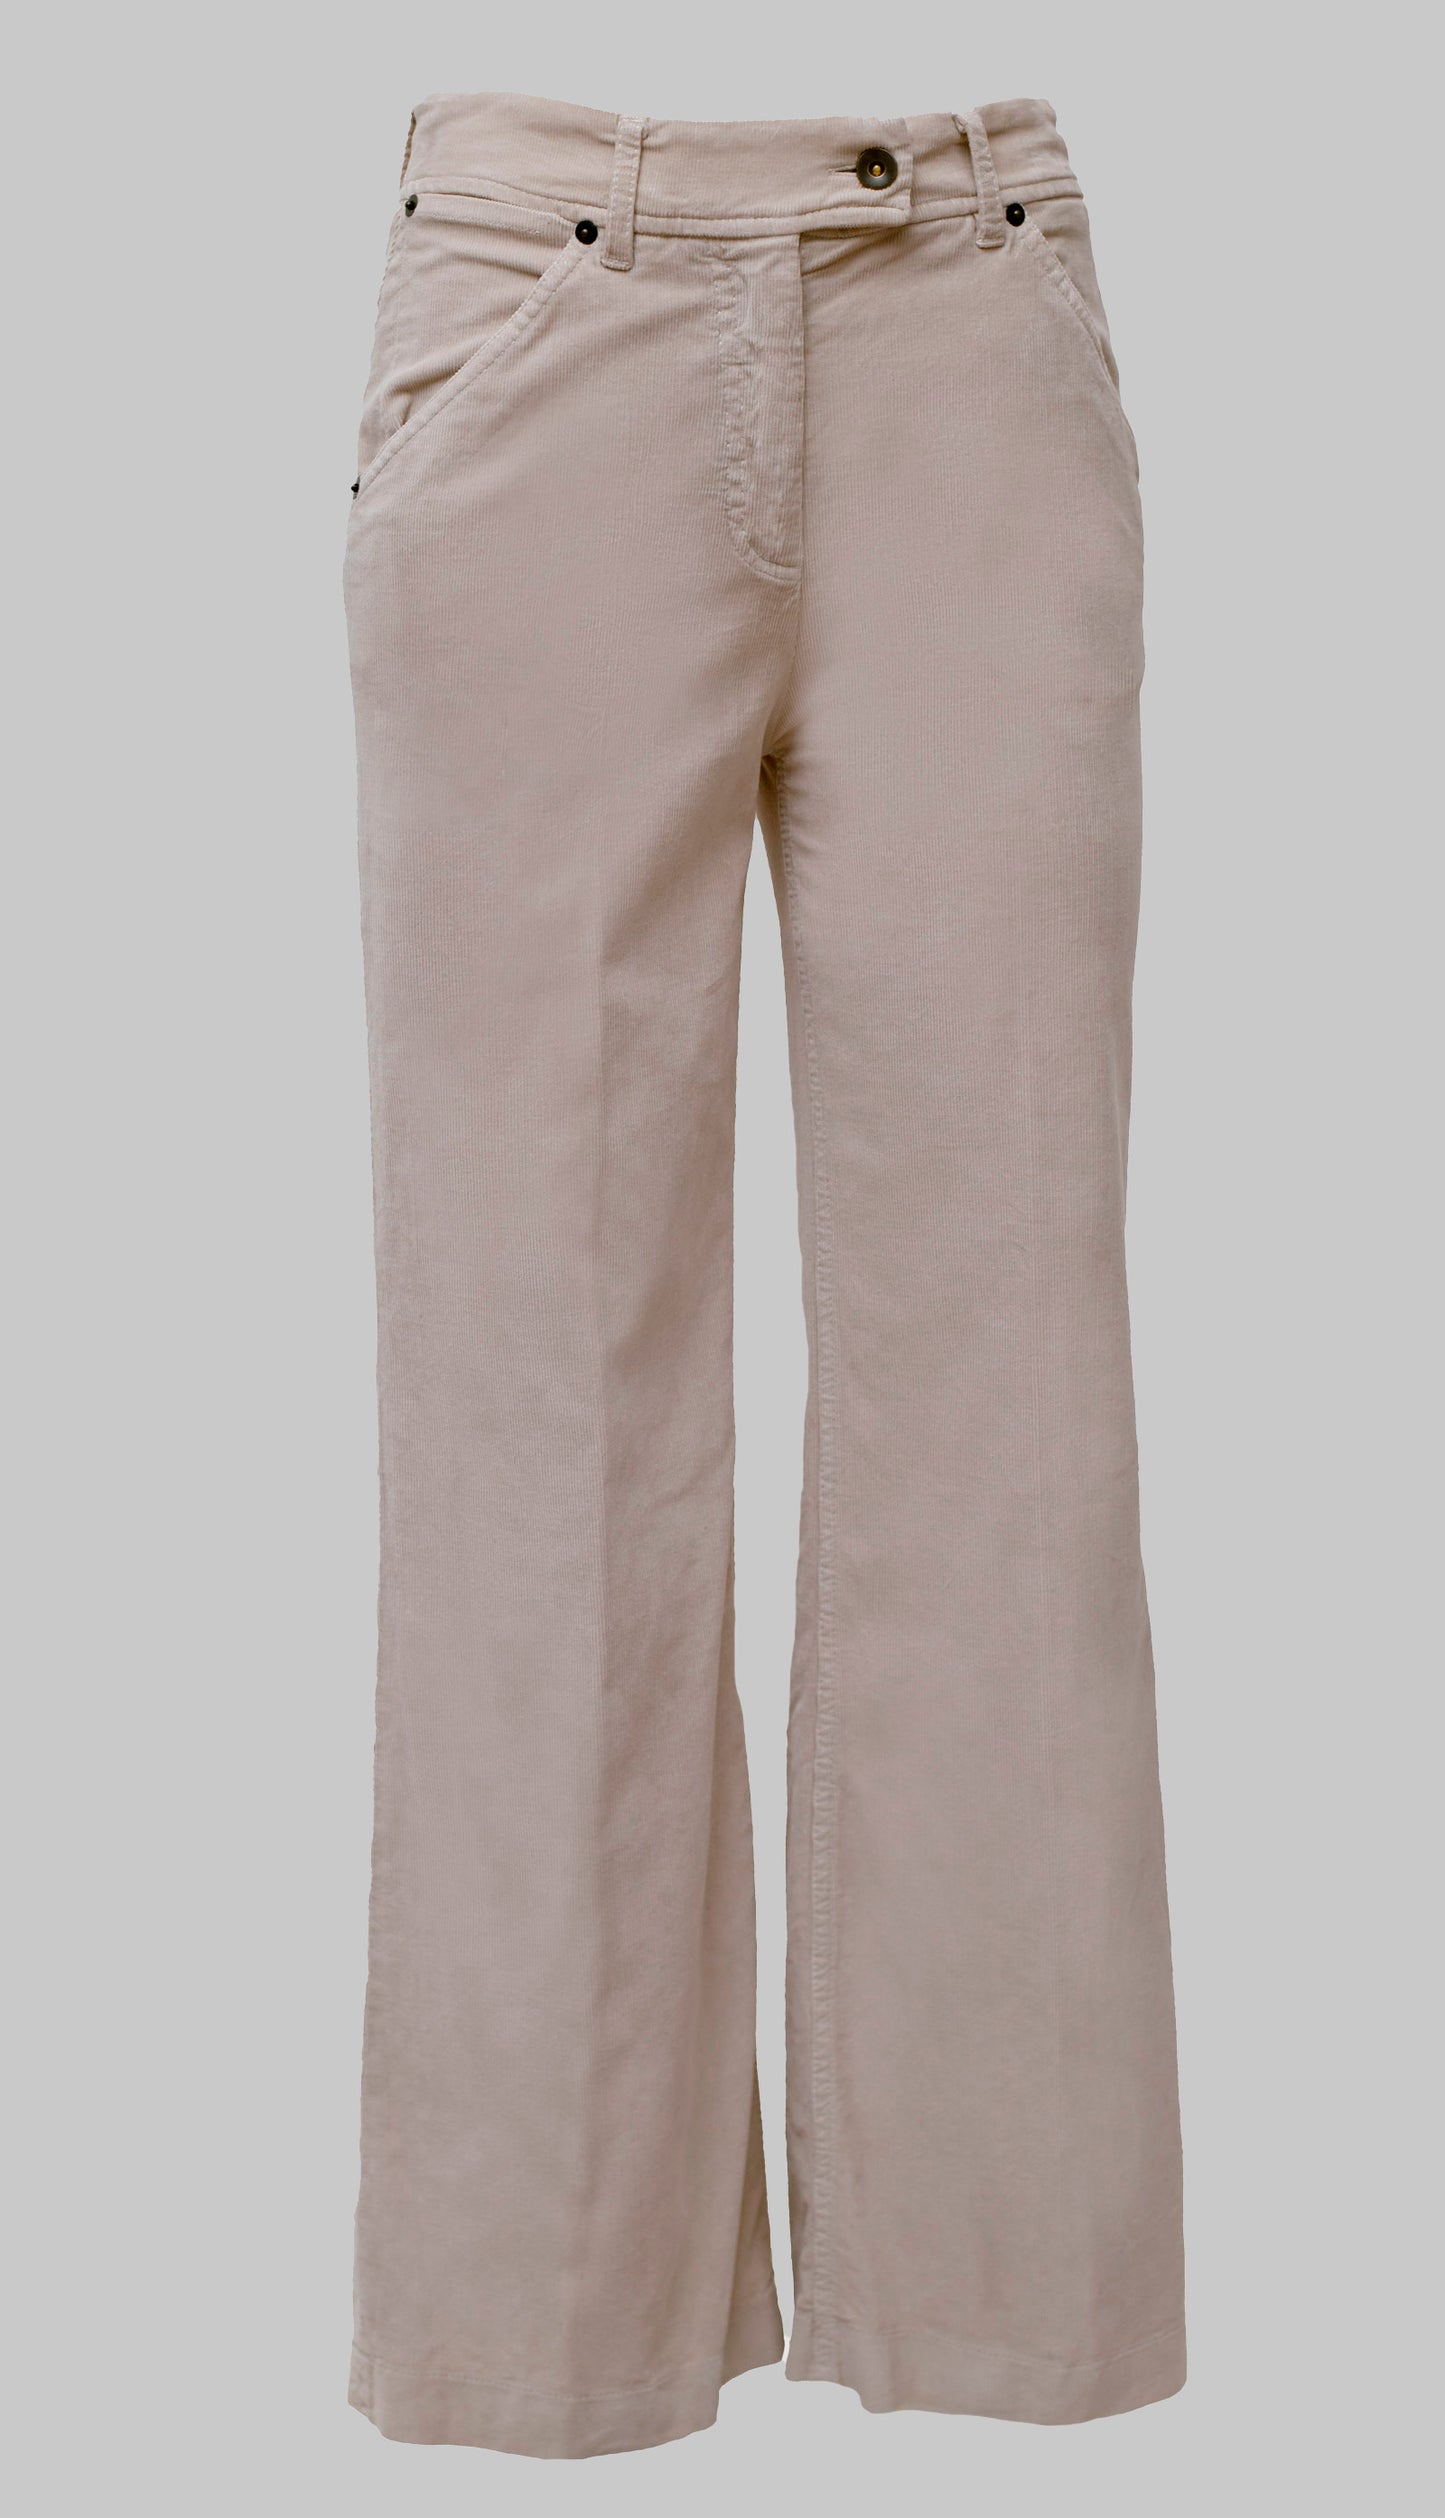 Ivory velvet trousers